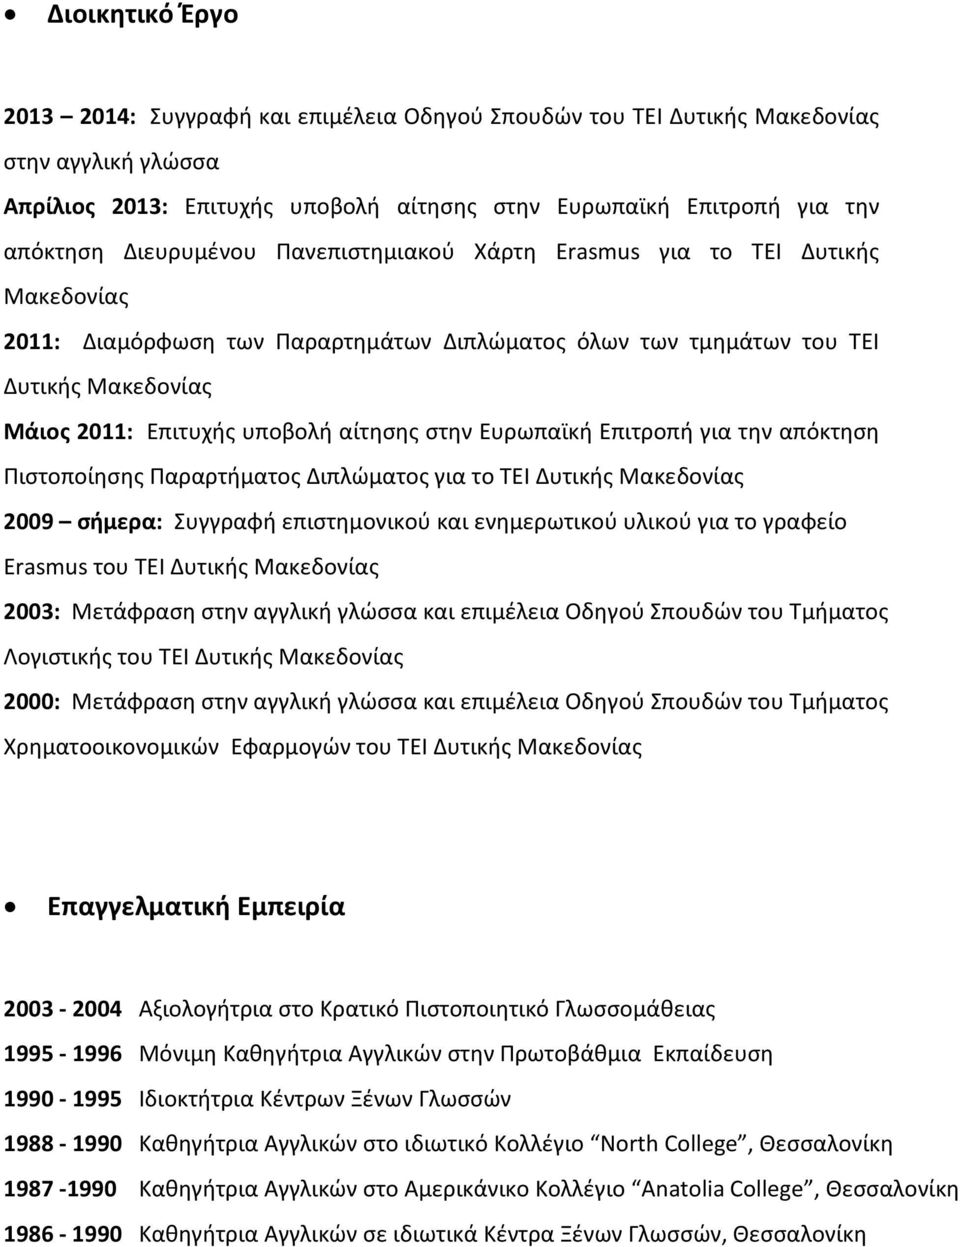 στην Ευρωπαϊκή Επιτροπή για την απόκτηση Πιστοποίησης Παραρτήματος Διπλώματος για το ΤΕΙ Δυτικής Μακεδονίας 2009 σήμερα: Συγγραφή επιστημονικού και ενημερωτικού υλικού για το γραφείο Erasmus του ΤΕΙ